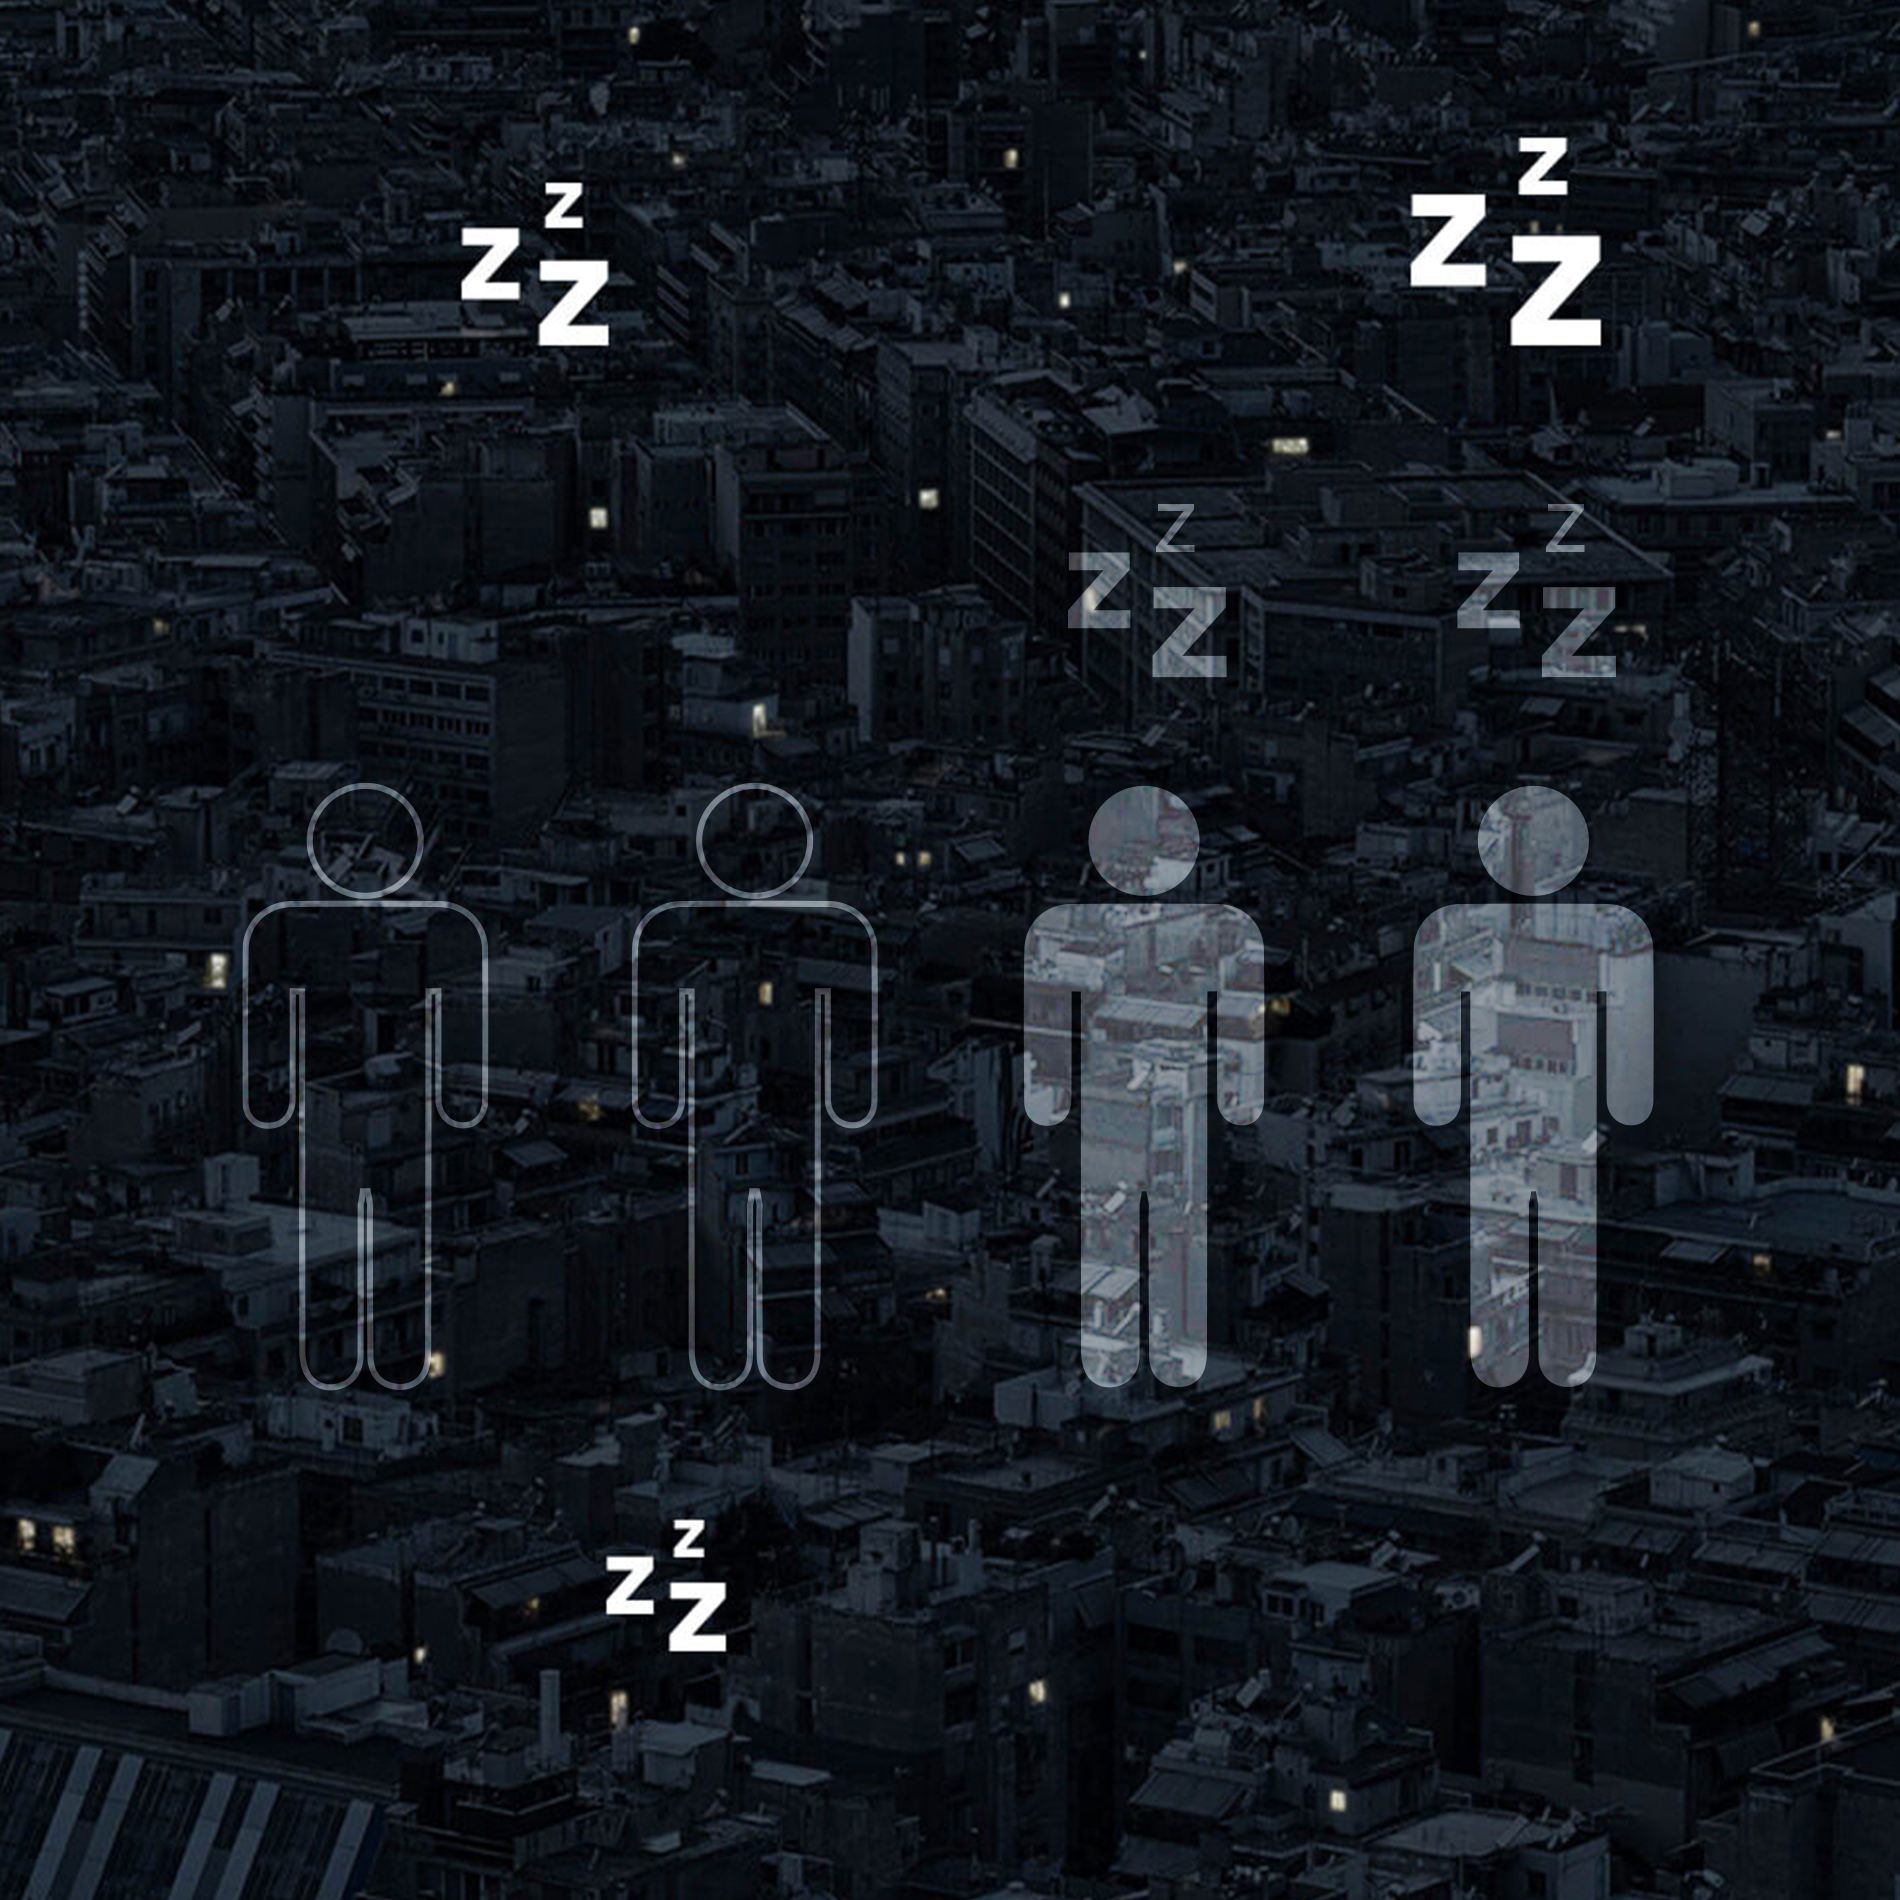 Karte bei Nacht mit vier Personen als Icons, zwei als Umriss und zwei weiß gefüllt | mey®